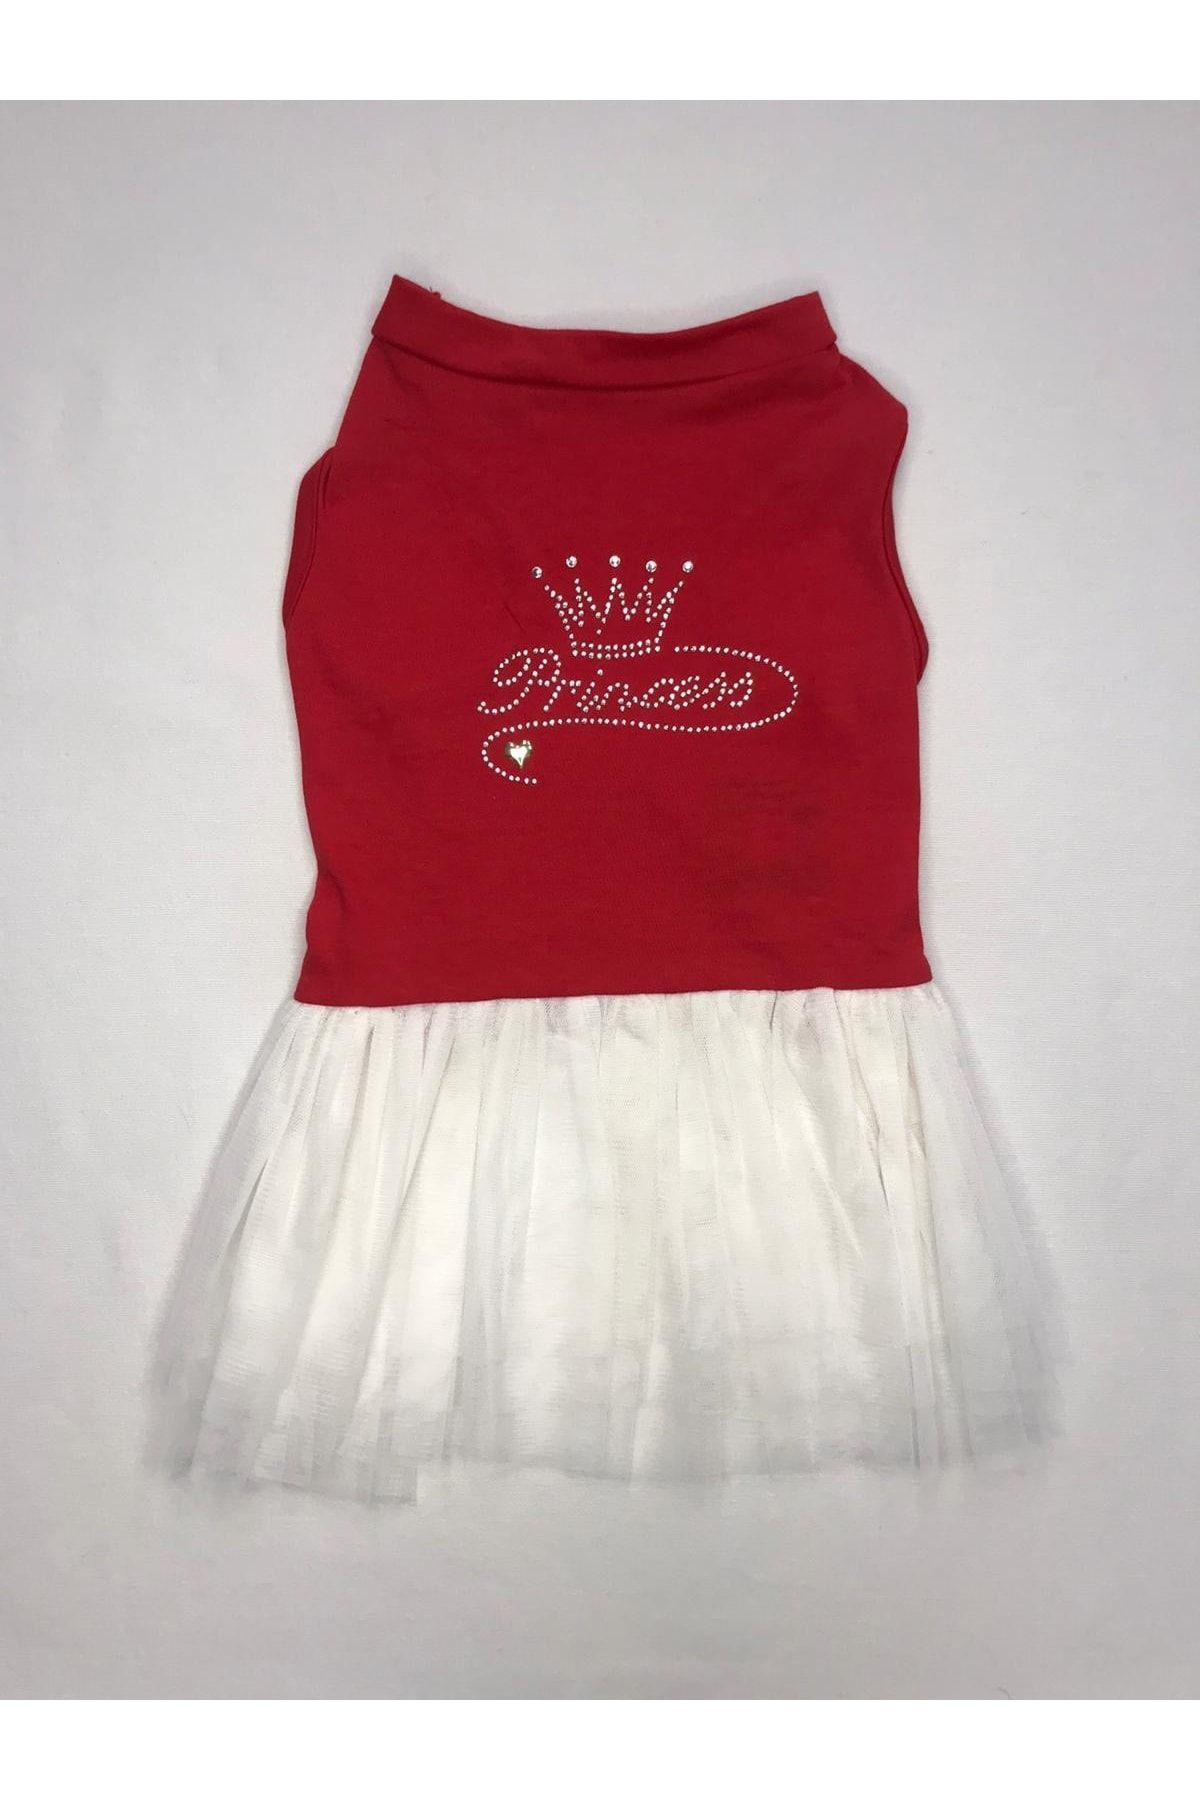 CASPERPET Tütülü Elbise Kırmızı/beyaz Princess